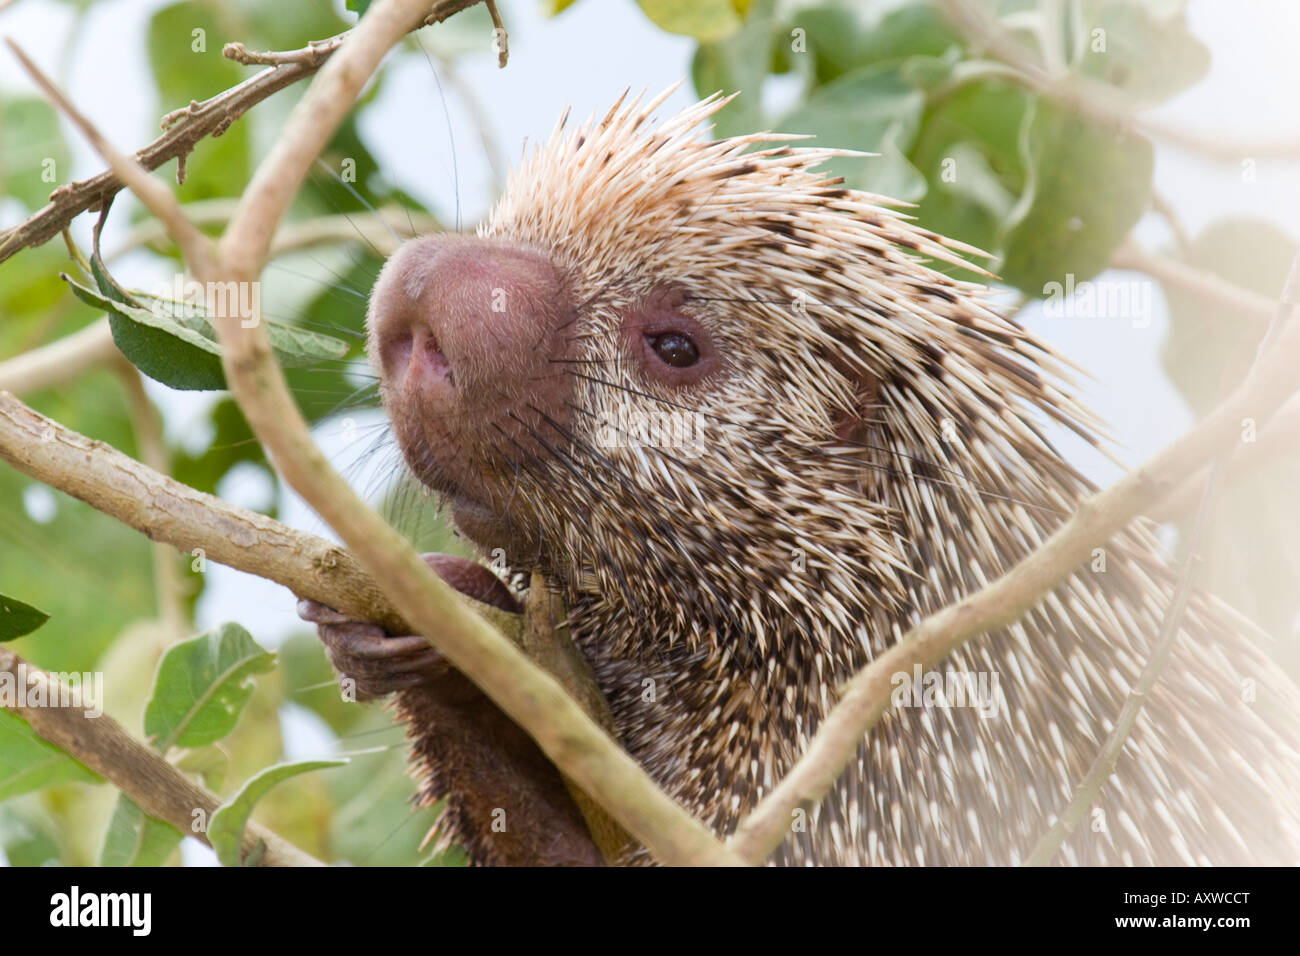 Coendou prehensilis porcupine (brésilien). Photo prise dans le Cerrado brésilien. Banque D'Images